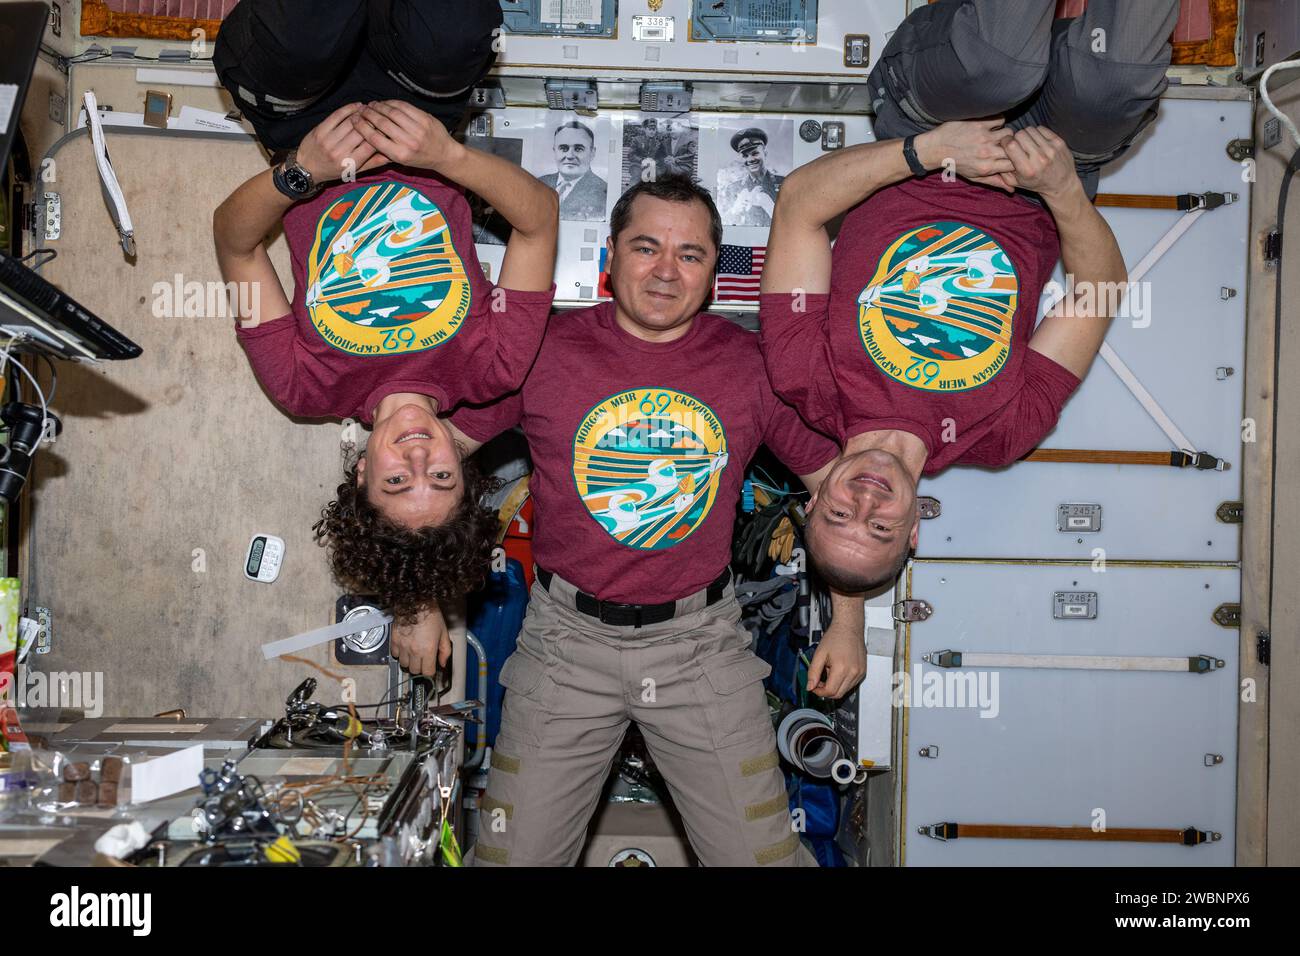 Iss062e000449 (7. Februar 2020) ---- die dreiköpfige Expedition 62-Crew mit ihrem Mission Patch auf T-Shirts wird bis April dieses Jahres an Bord der Internationalen Raumstation leben. In der Mitte befindet sich Roscosmos-Kommandant Oleg Skripochka, flankiert von den NASA-Flugingenieuren Jessica Meir und Andrew Morgan. Stockfoto